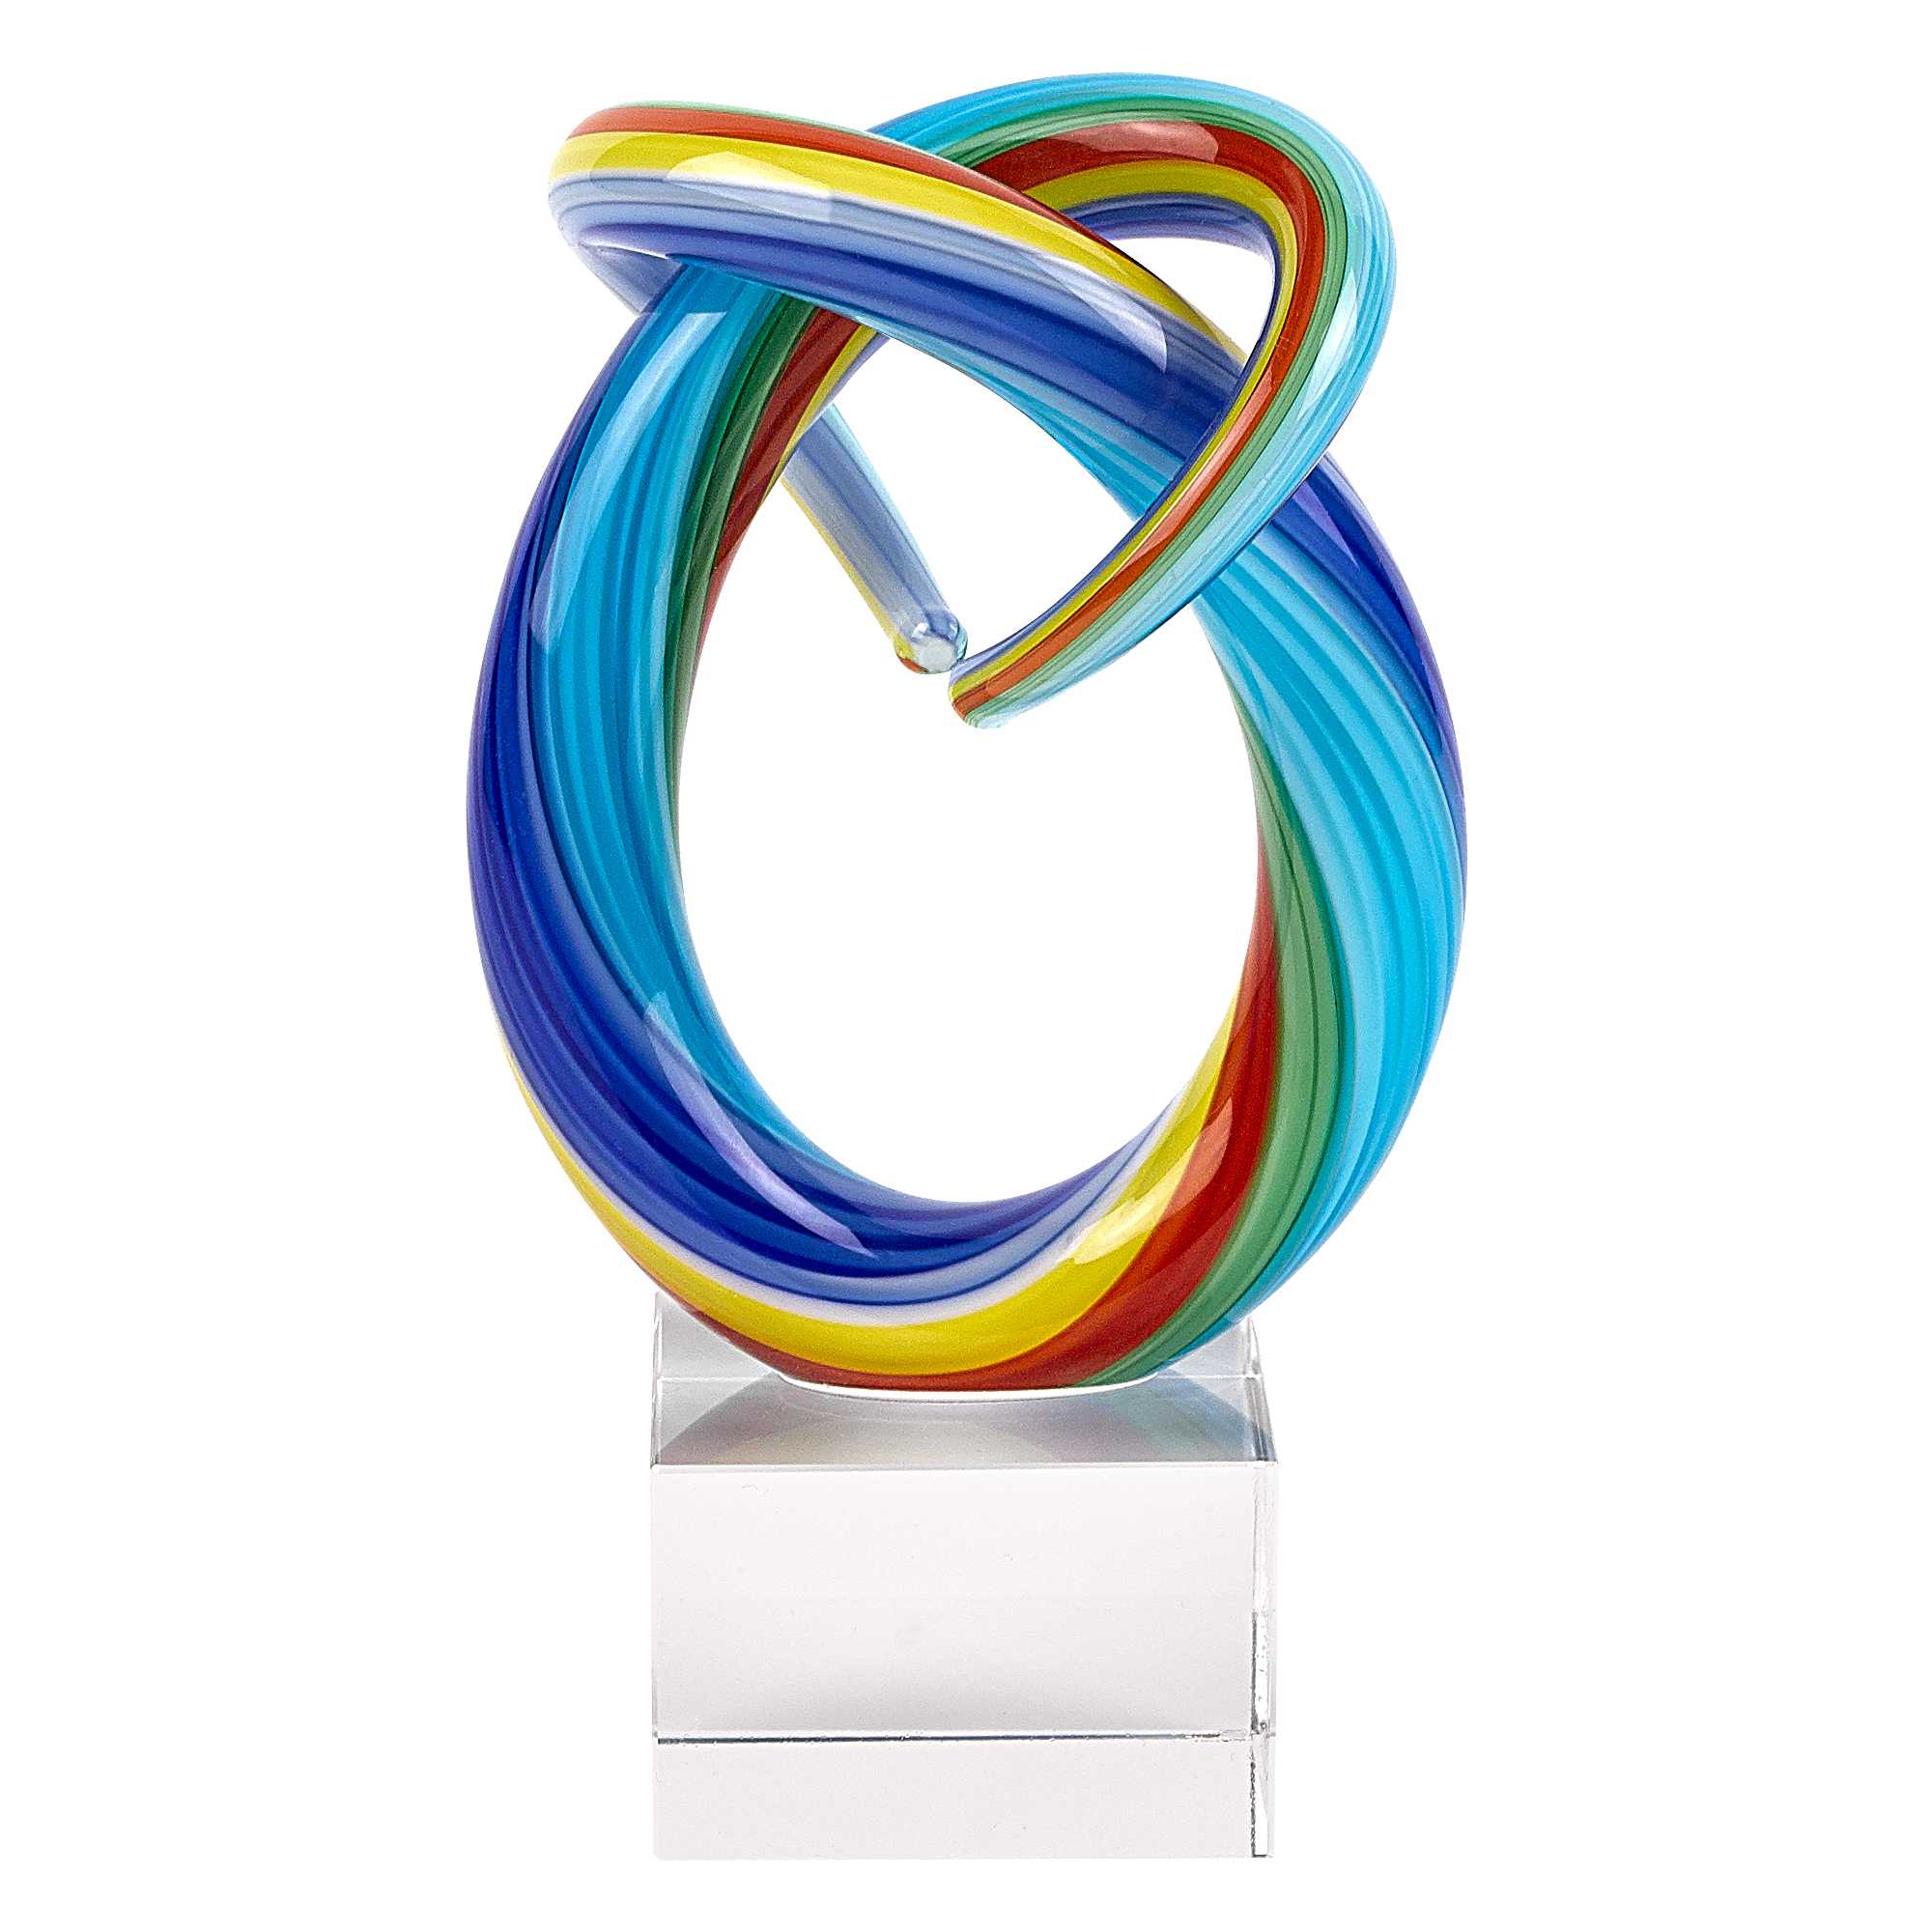 6" MultiColor Art Glass Rainbow Centerpiece